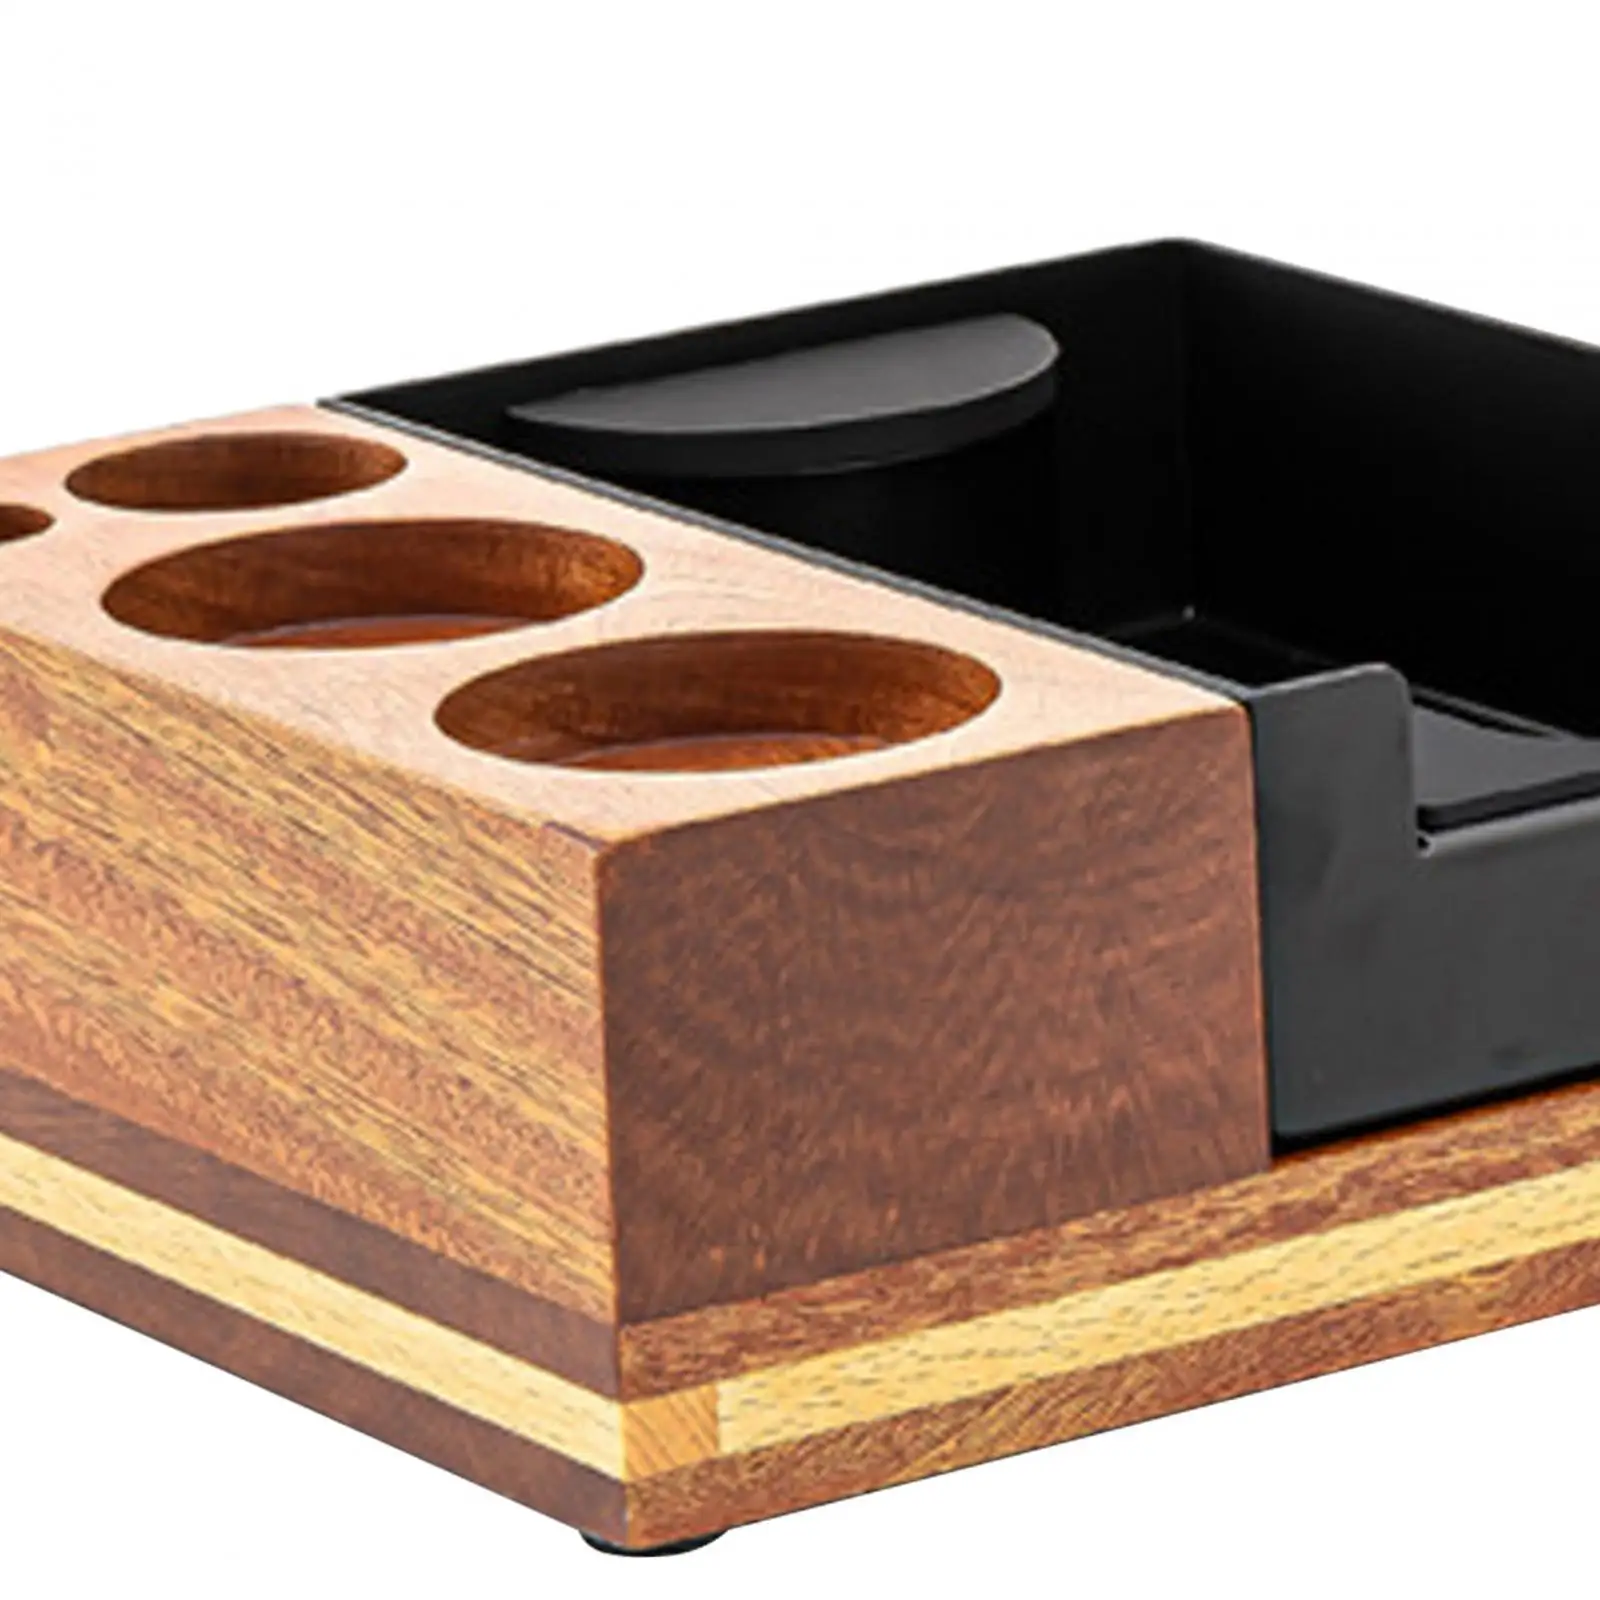 Multi Storage Coffee Tamper Holder Detachable for Desktop Kitchen Tea Room